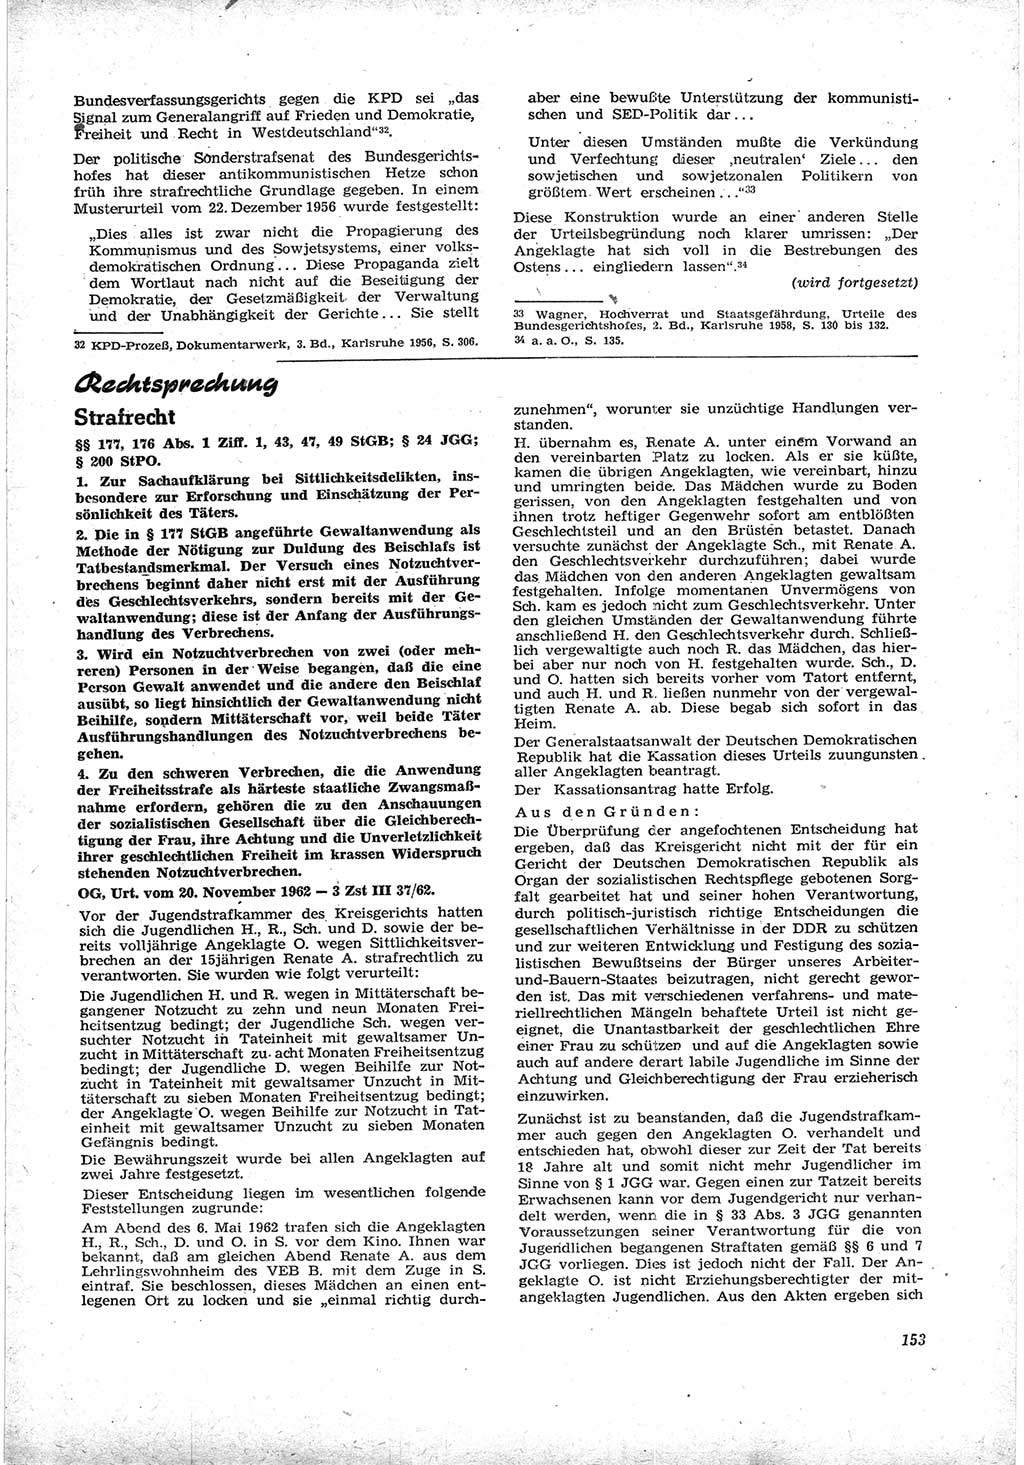 Neue Justiz (NJ), Zeitschrift für Recht und Rechtswissenschaft [Deutsche Demokratische Republik (DDR)], 17. Jahrgang 1963, Seite 153 (NJ DDR 1963, S. 153)